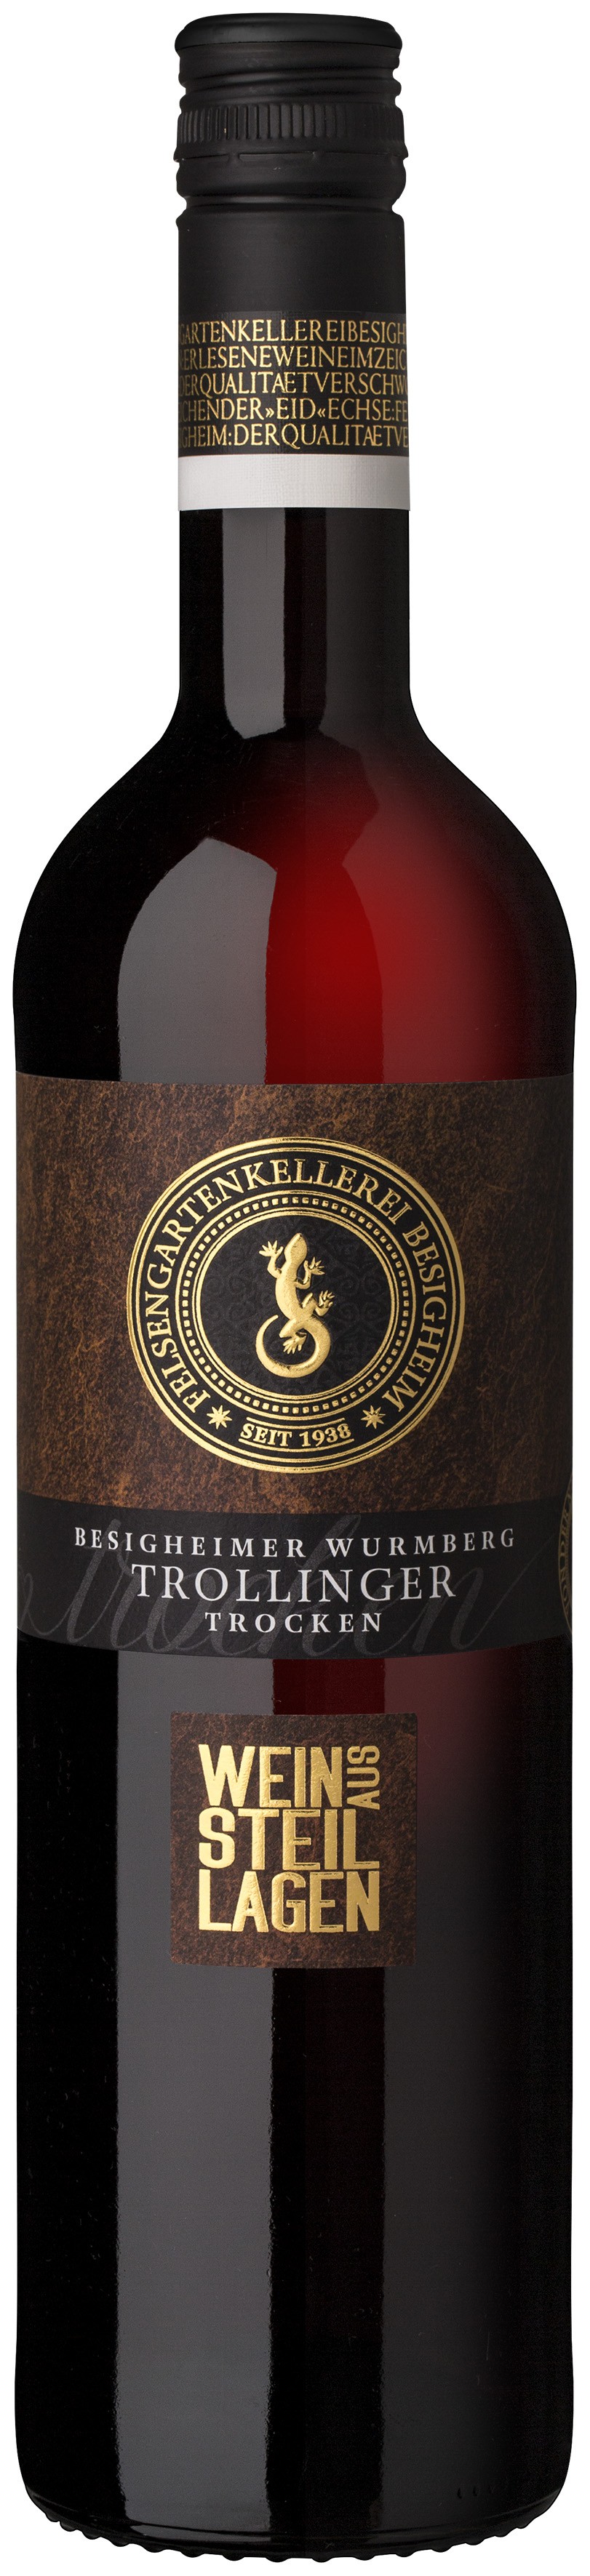 Besigheimer Wurmberg Steillagen Trollinger Qualitätswein trocken 